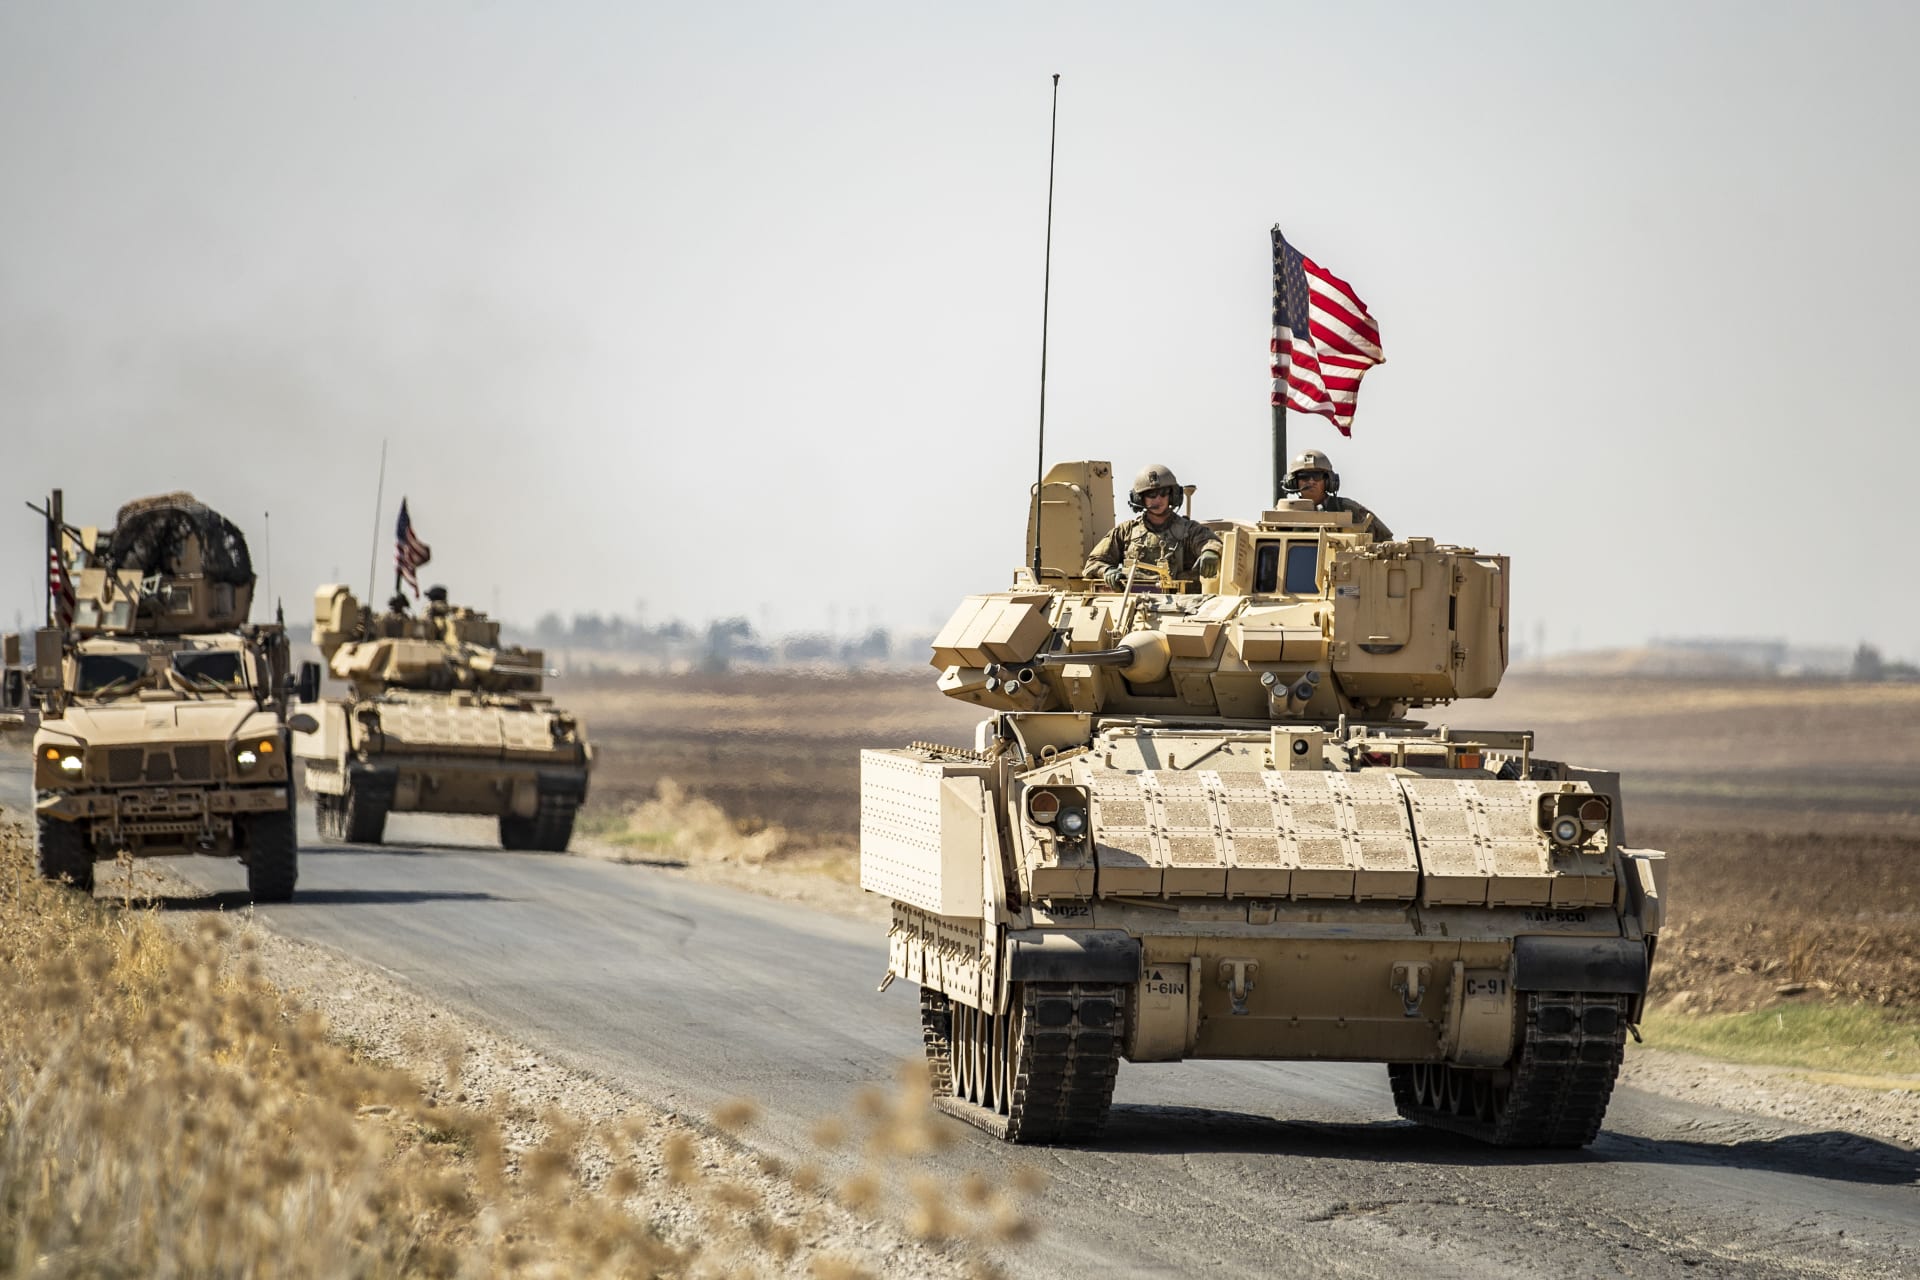 قوات سوريا الديمقراطية تحذر من هجوم تركي بري "وشيك".. والولايات المتحدة تخفض دورياتها مع "قسد"